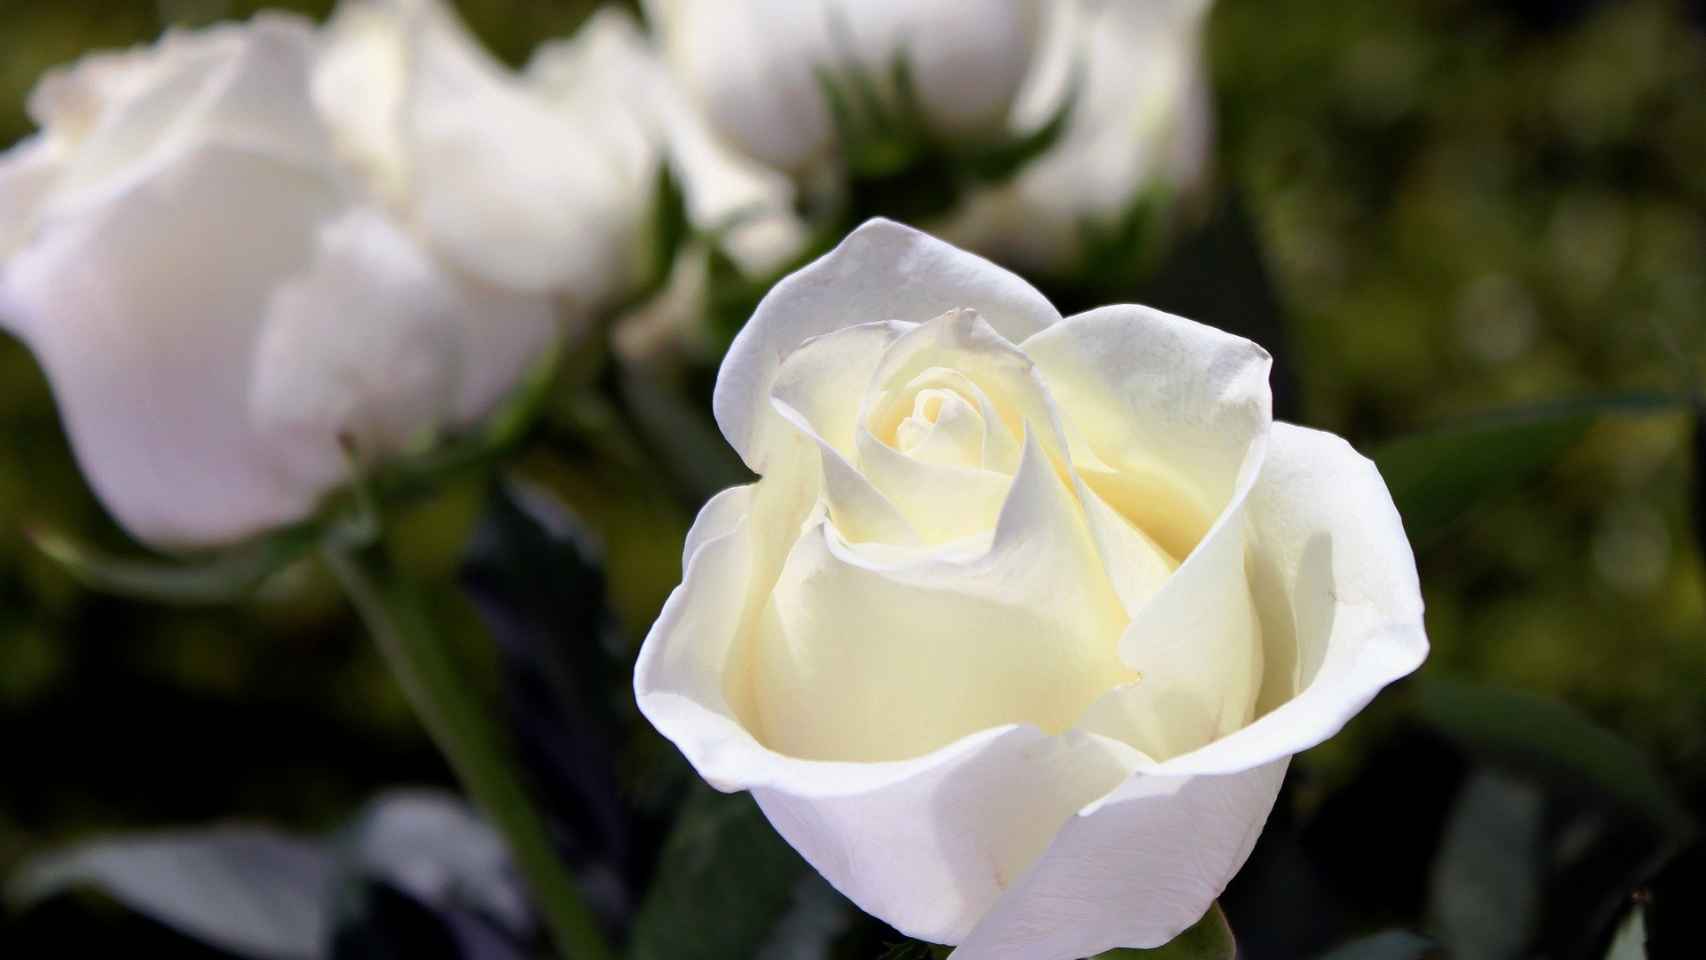 sabio La oficina Casarse El significado de las rosas blancas, el lenguaje de las flores